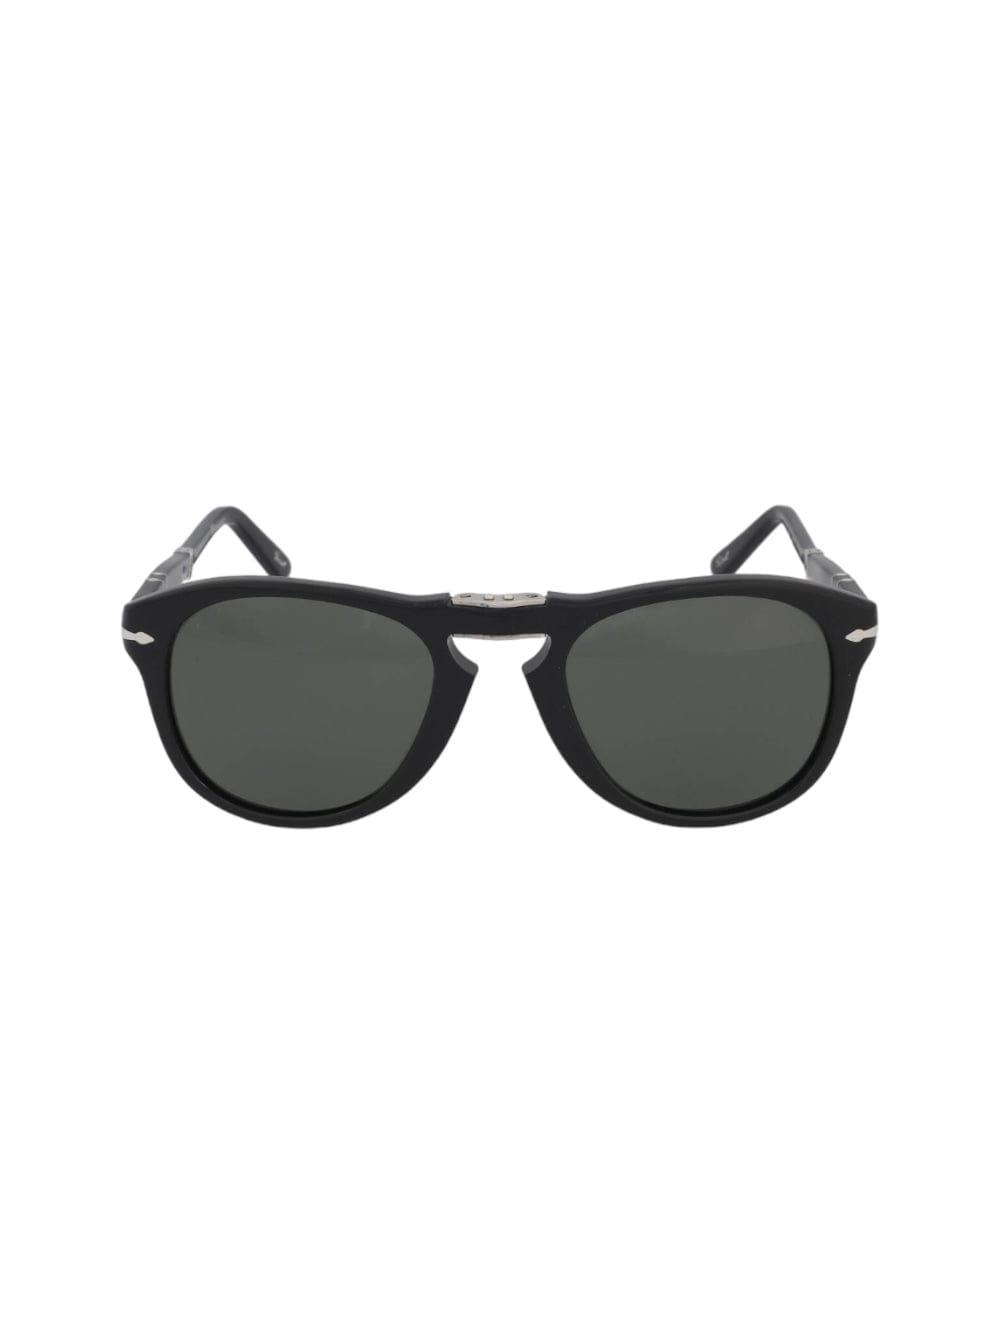 Shop Persol 714 - Steve Mc Queen Sunglasses